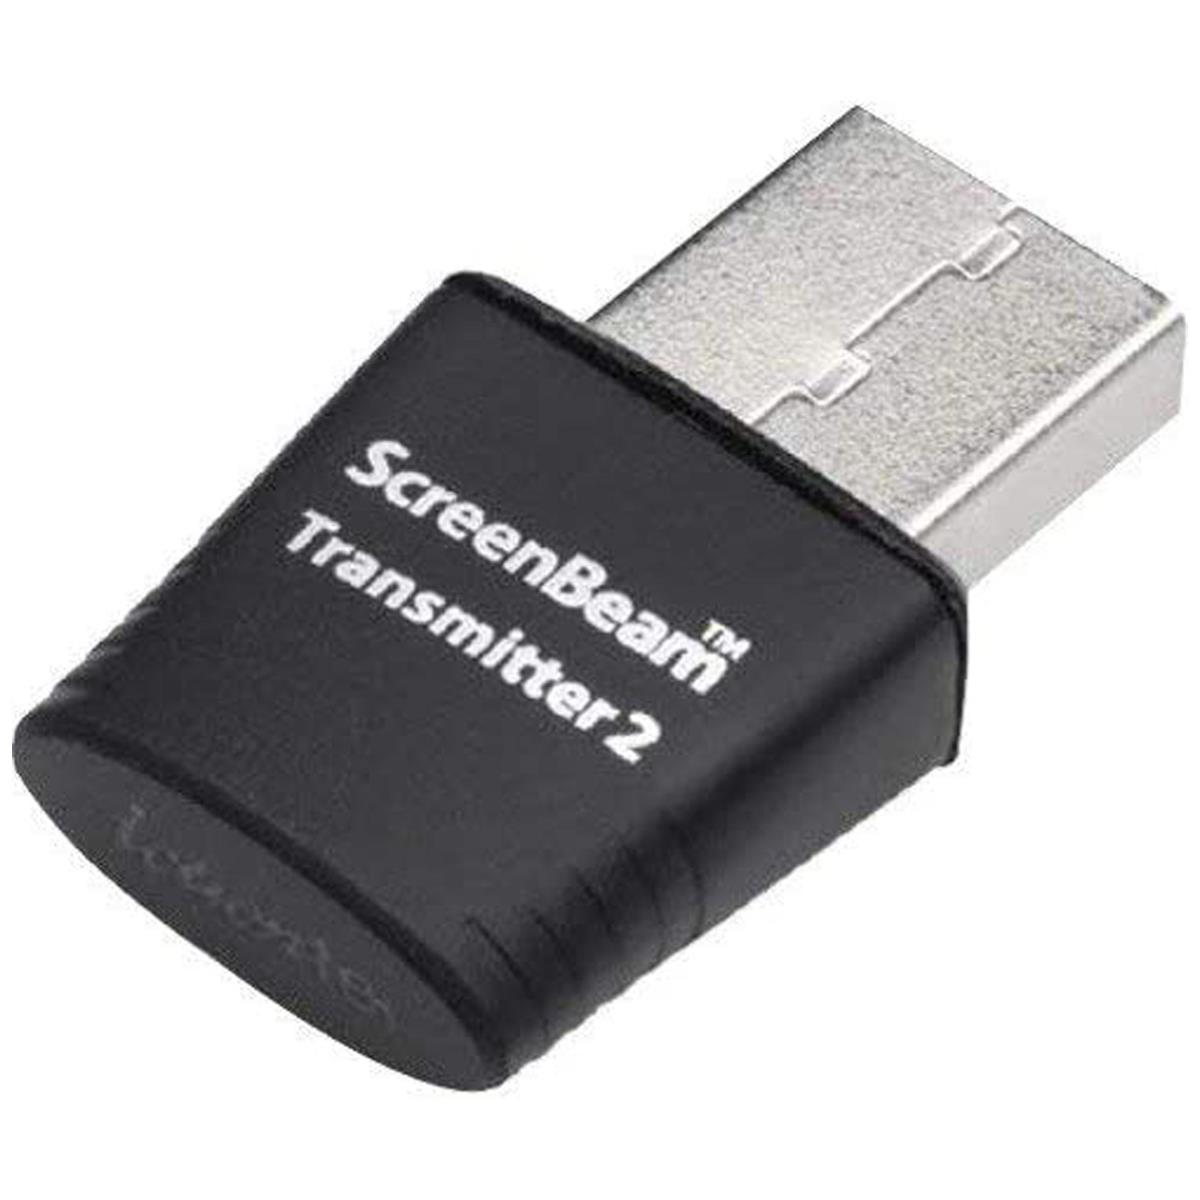 Usb трансмиттер. USB передатчик. Wi-Fi USB трансмиттер. Трансмиттер от USB. JVC USB Wireless Transmitter.